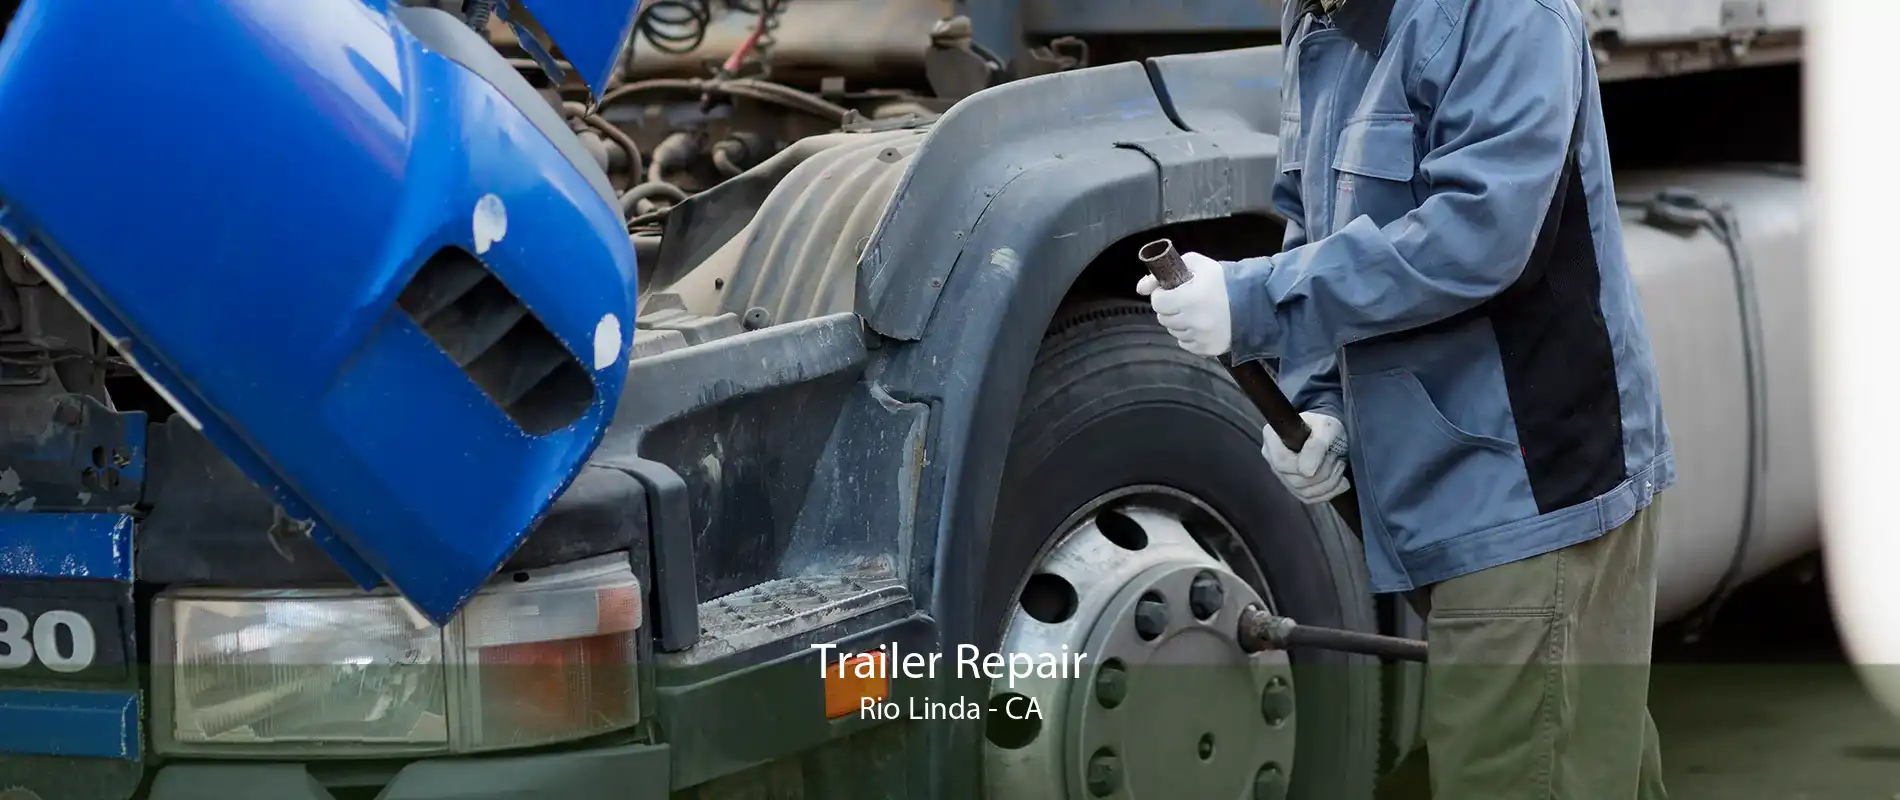 Trailer Repair Rio Linda - CA